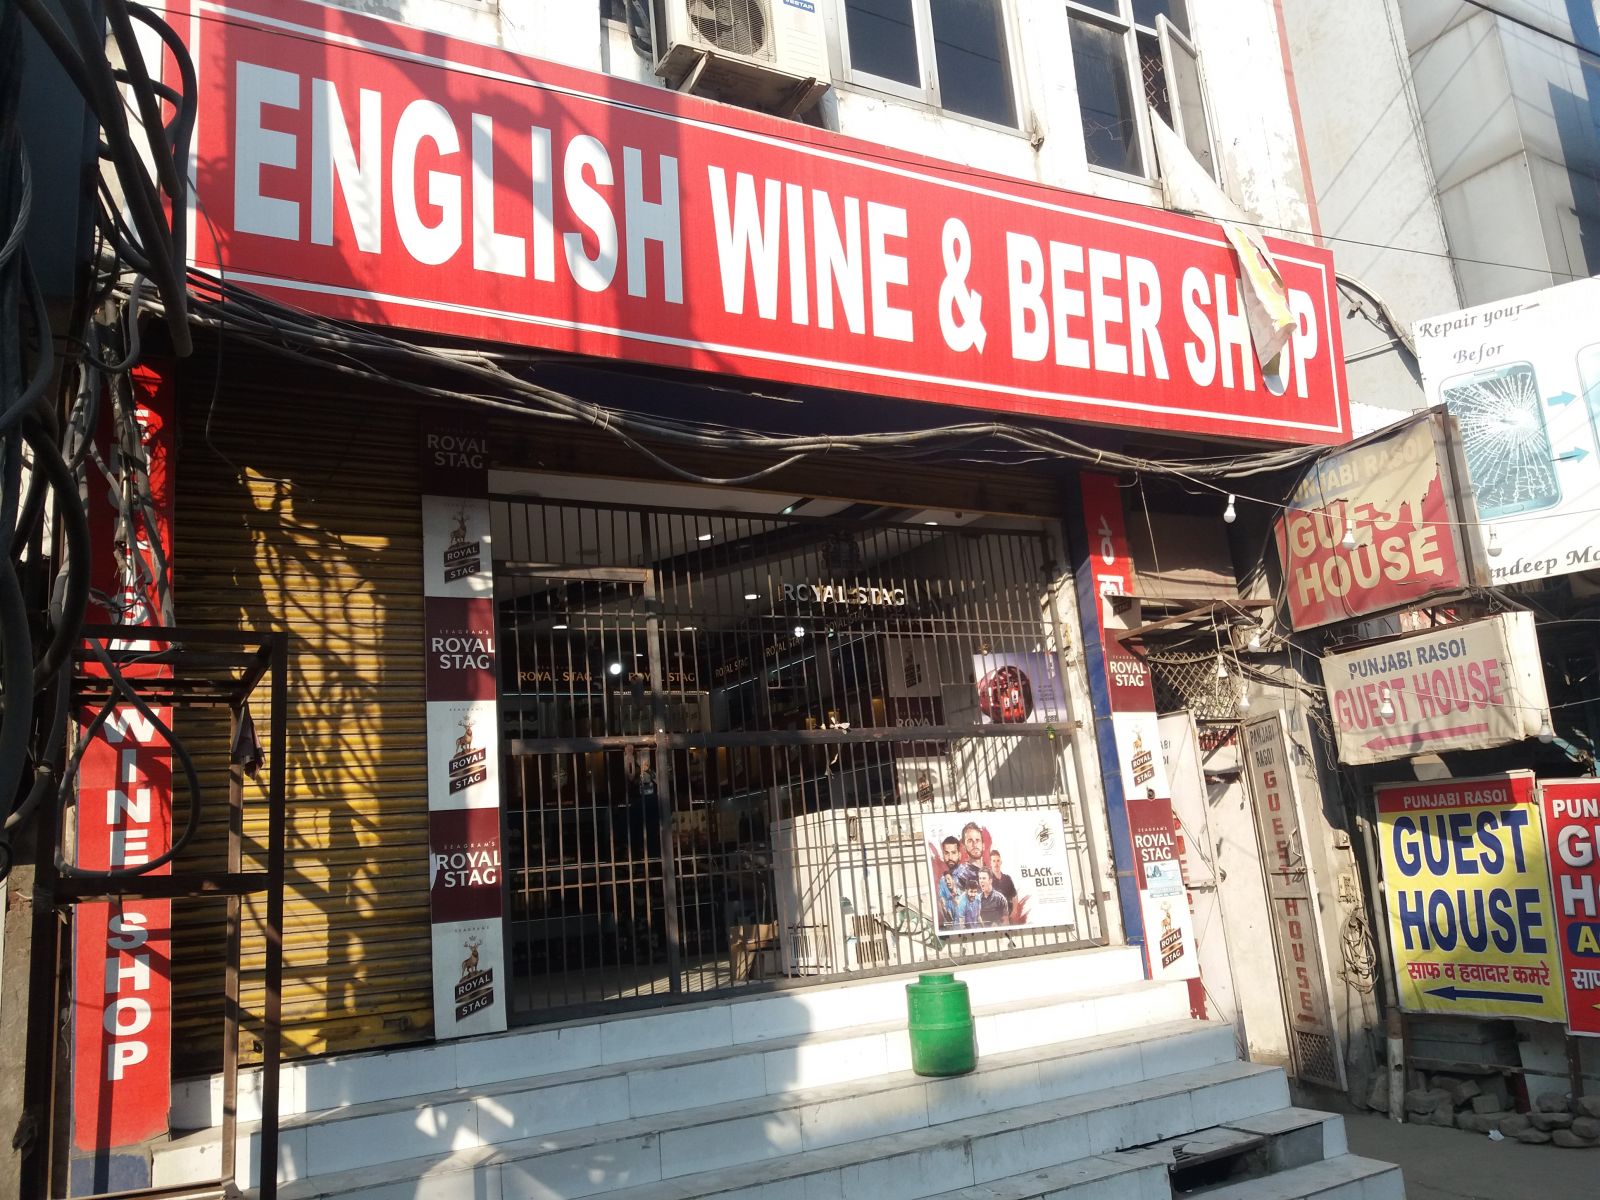 Borszaküzlet bor nélkül. India lakosságának 95 százaléka olyan hitrendszer követője, mely tiltja az alkoholfogyasztást, ez közös vonás a hinduizmusban, az iszlámban és a szikh vallásban. Ennek ellenére a szeszipar minden bizonnyal virágzik, legalábbis a kizárólag alkoholos italokat forgalmazó boltok tekintélyes számából erre lehet következtetni. Ezeket általában az Angol sör és bor üzlet név alatt futnak, ami elég megtévesztő elnevezés, két okból is. Egyrészt bort alig tartanak, olyat is láttam, amelyikben egyáltalán nem volt, whiskys üvegekkel ellenben tele vannak a polcok. Másrészt az angoloknak semmi közük az egészhez, ha csak az nem, hogy az indaiak a gyarmati időkben kaptak rá a whiskyre.